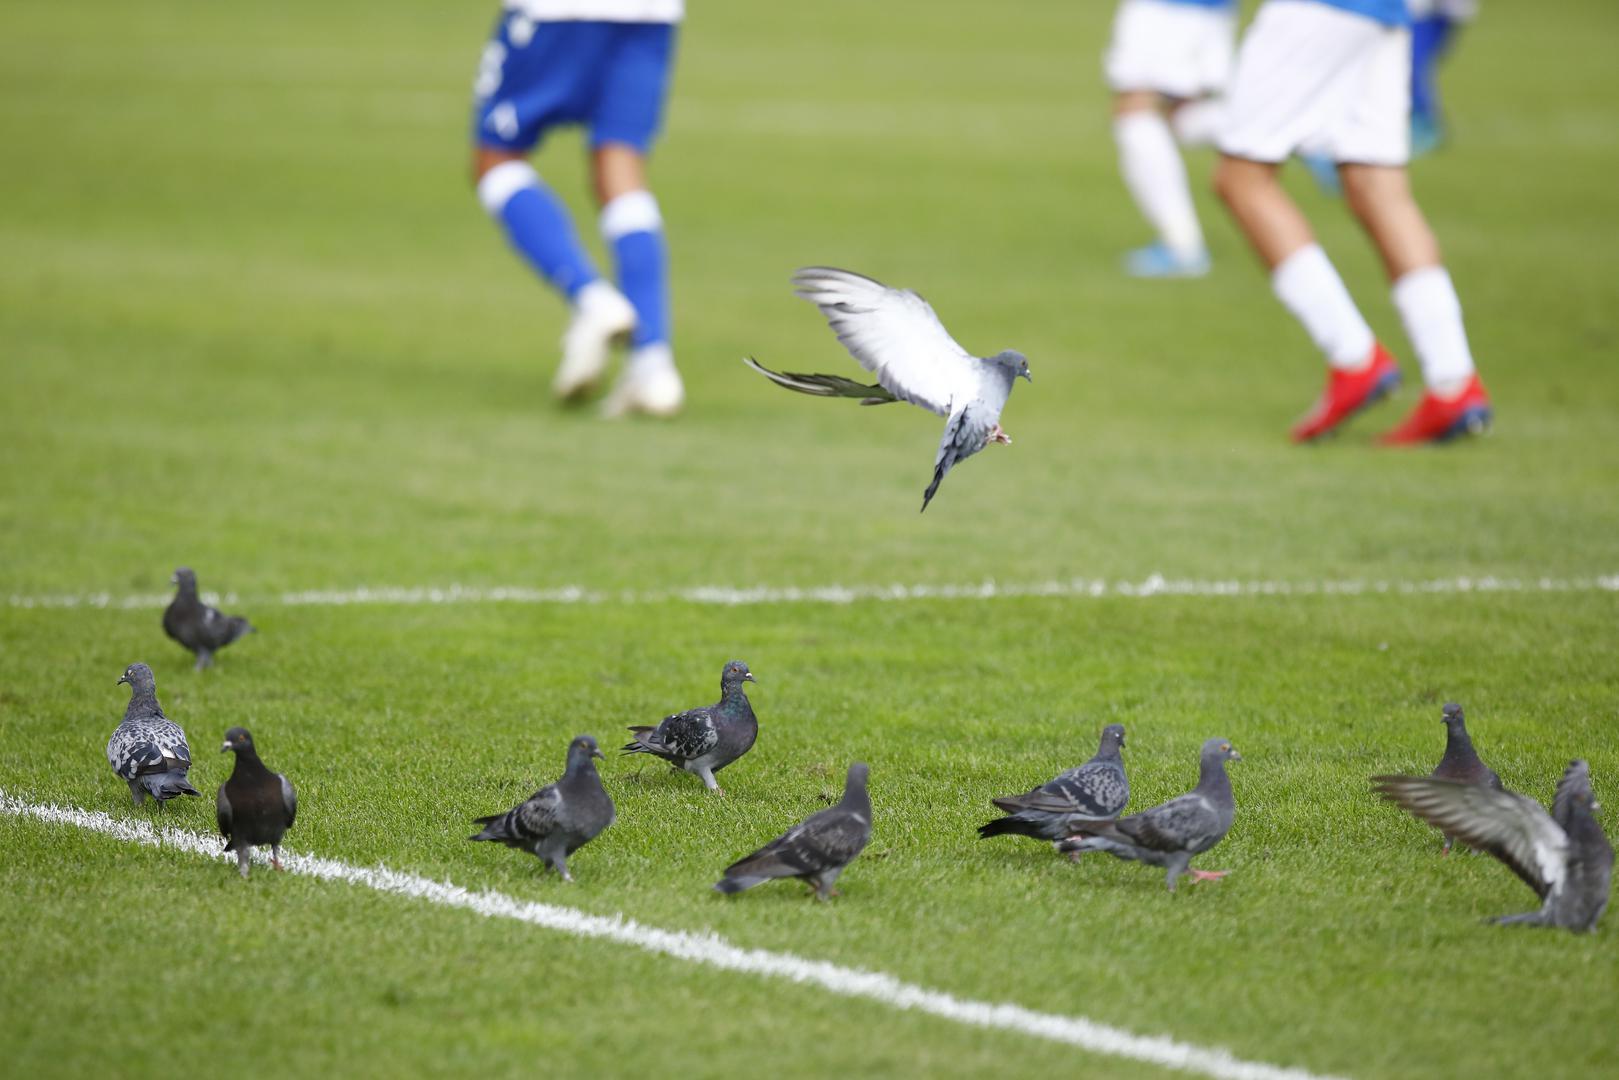 Za vrijeme utakmice na teren poljudskog stadiona je stalno slijetalo jato golubova...